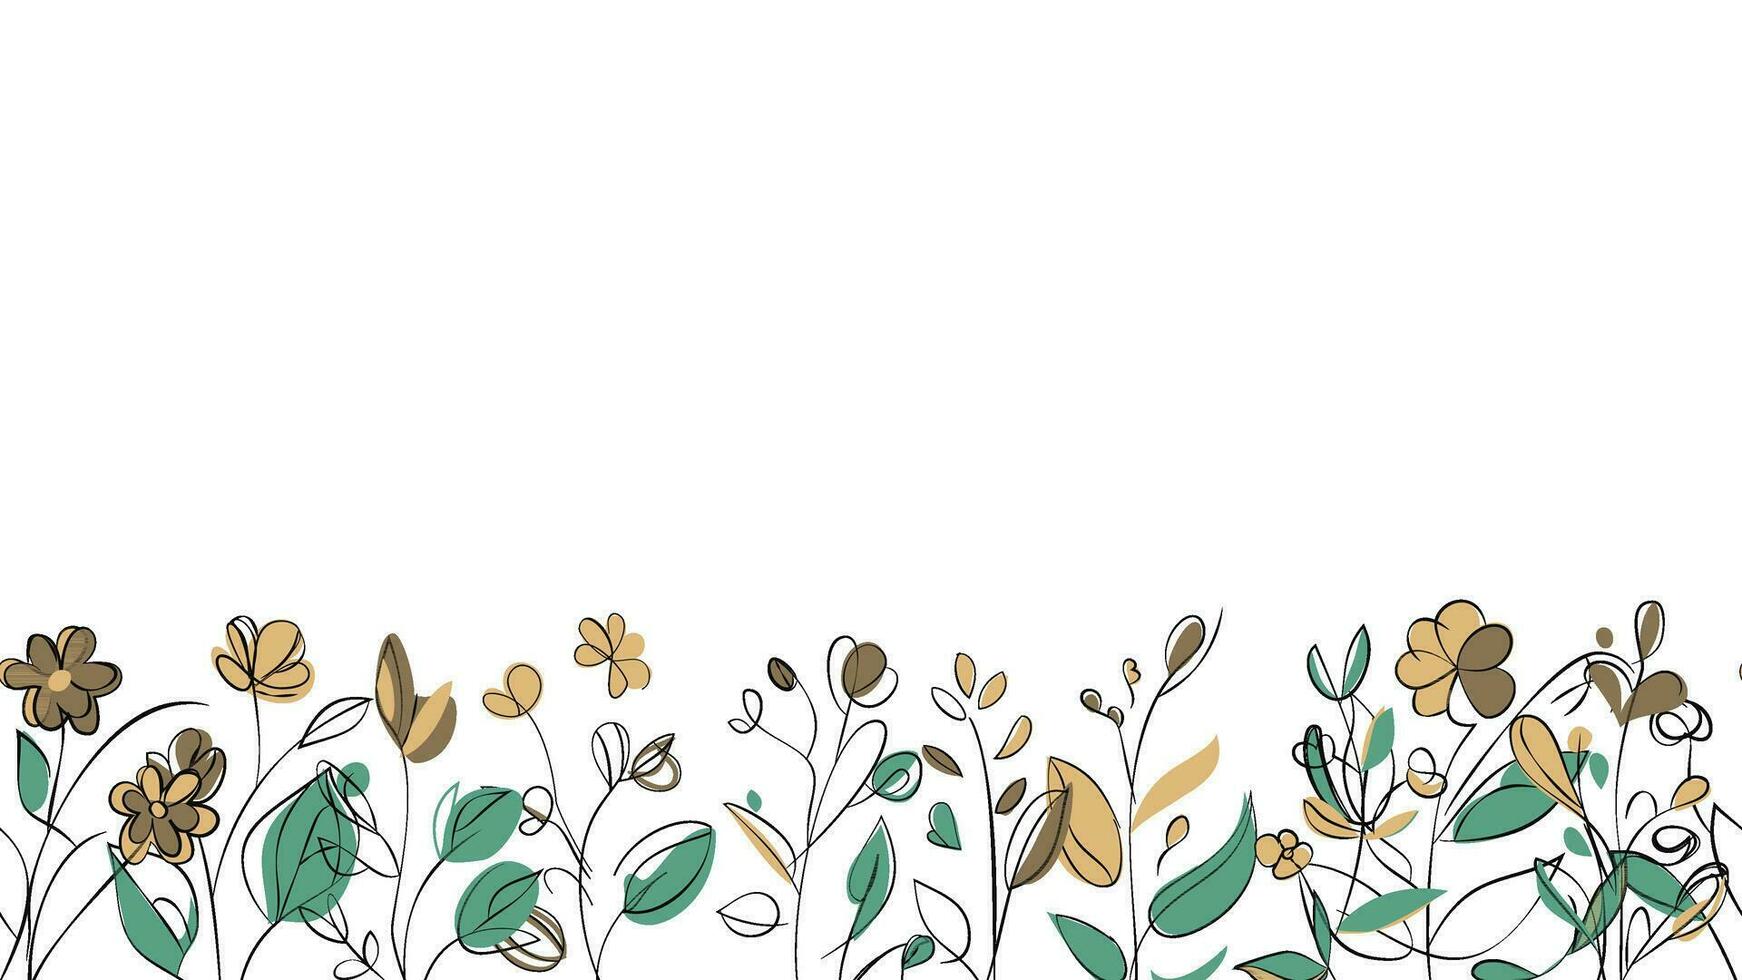 primavera vistoso botánico plano vector horizontal ilustración en blanco antecedentes. bandera floral fondo decorado con maravilloso multicolor floreciente flores y hojas borde.